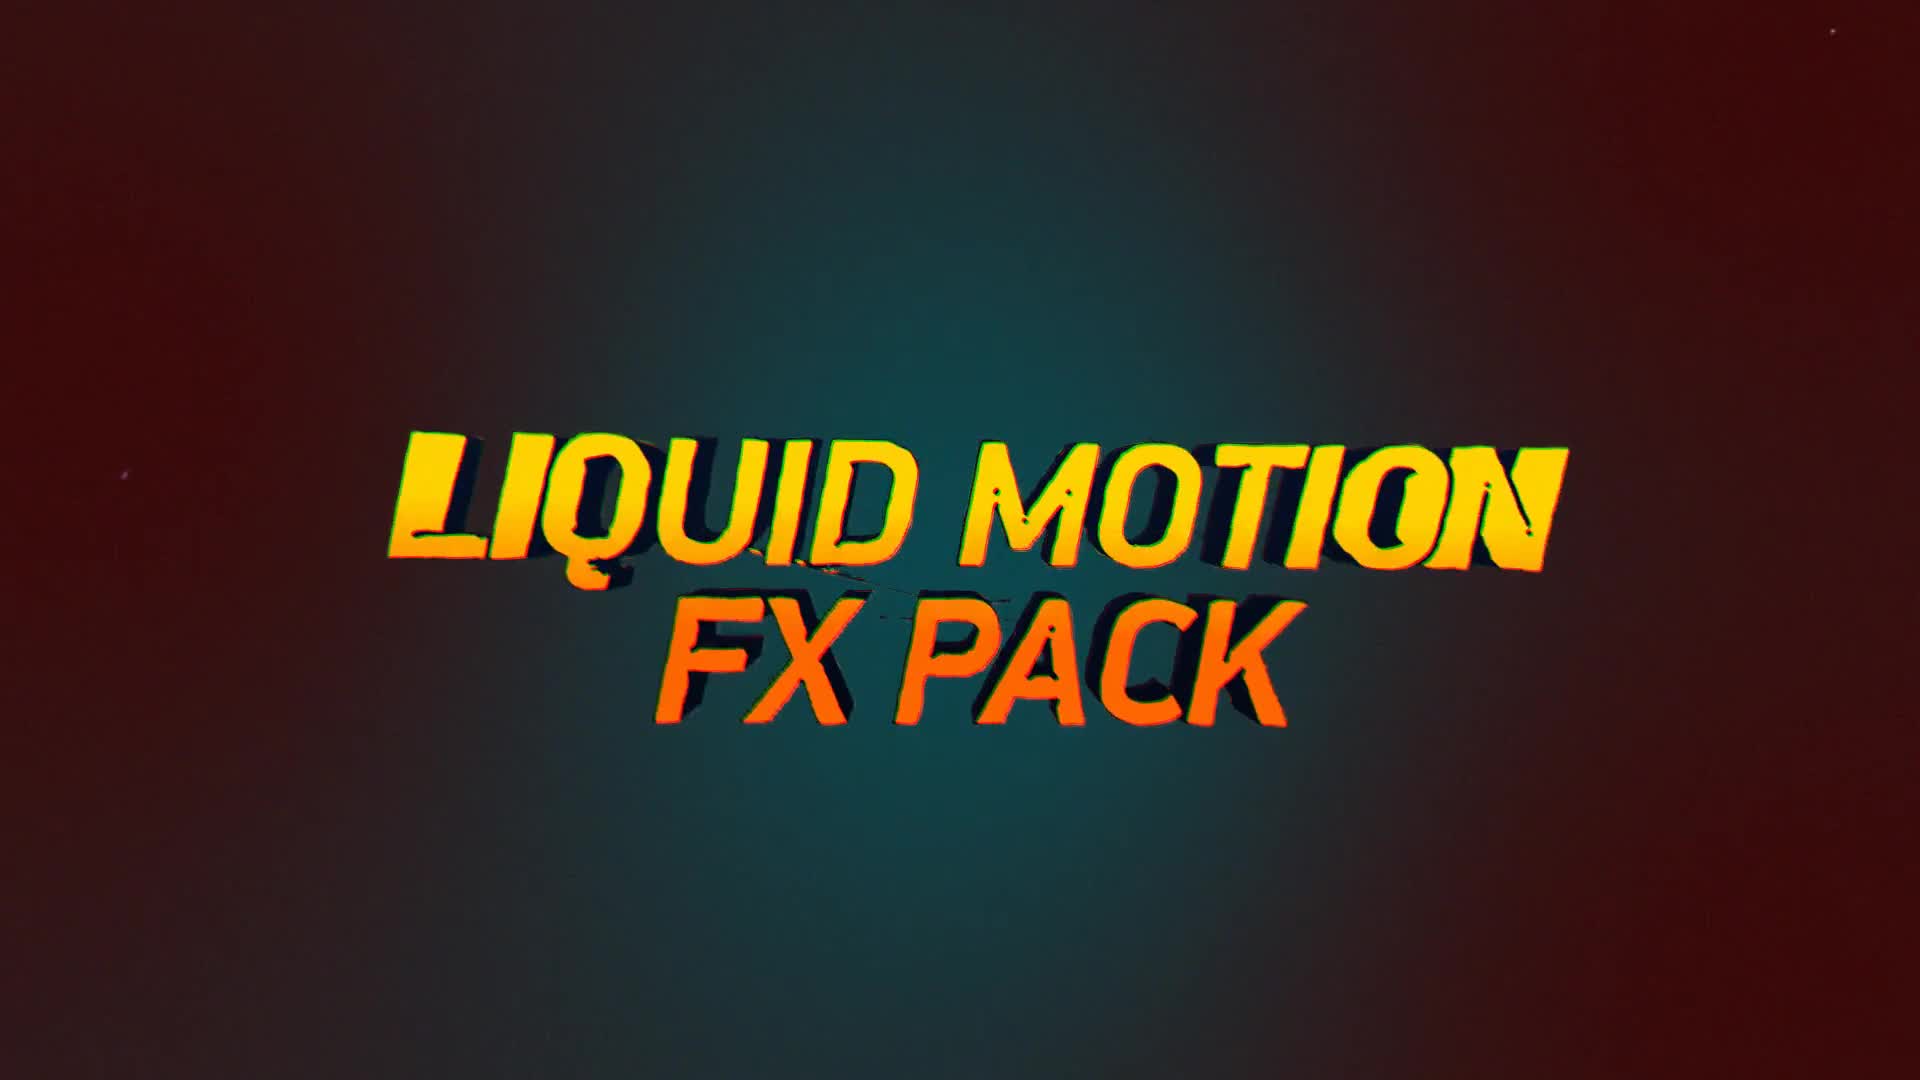 3D Liquid Motion FX Packages Videohive 21676418 Premiere Pro Image 1